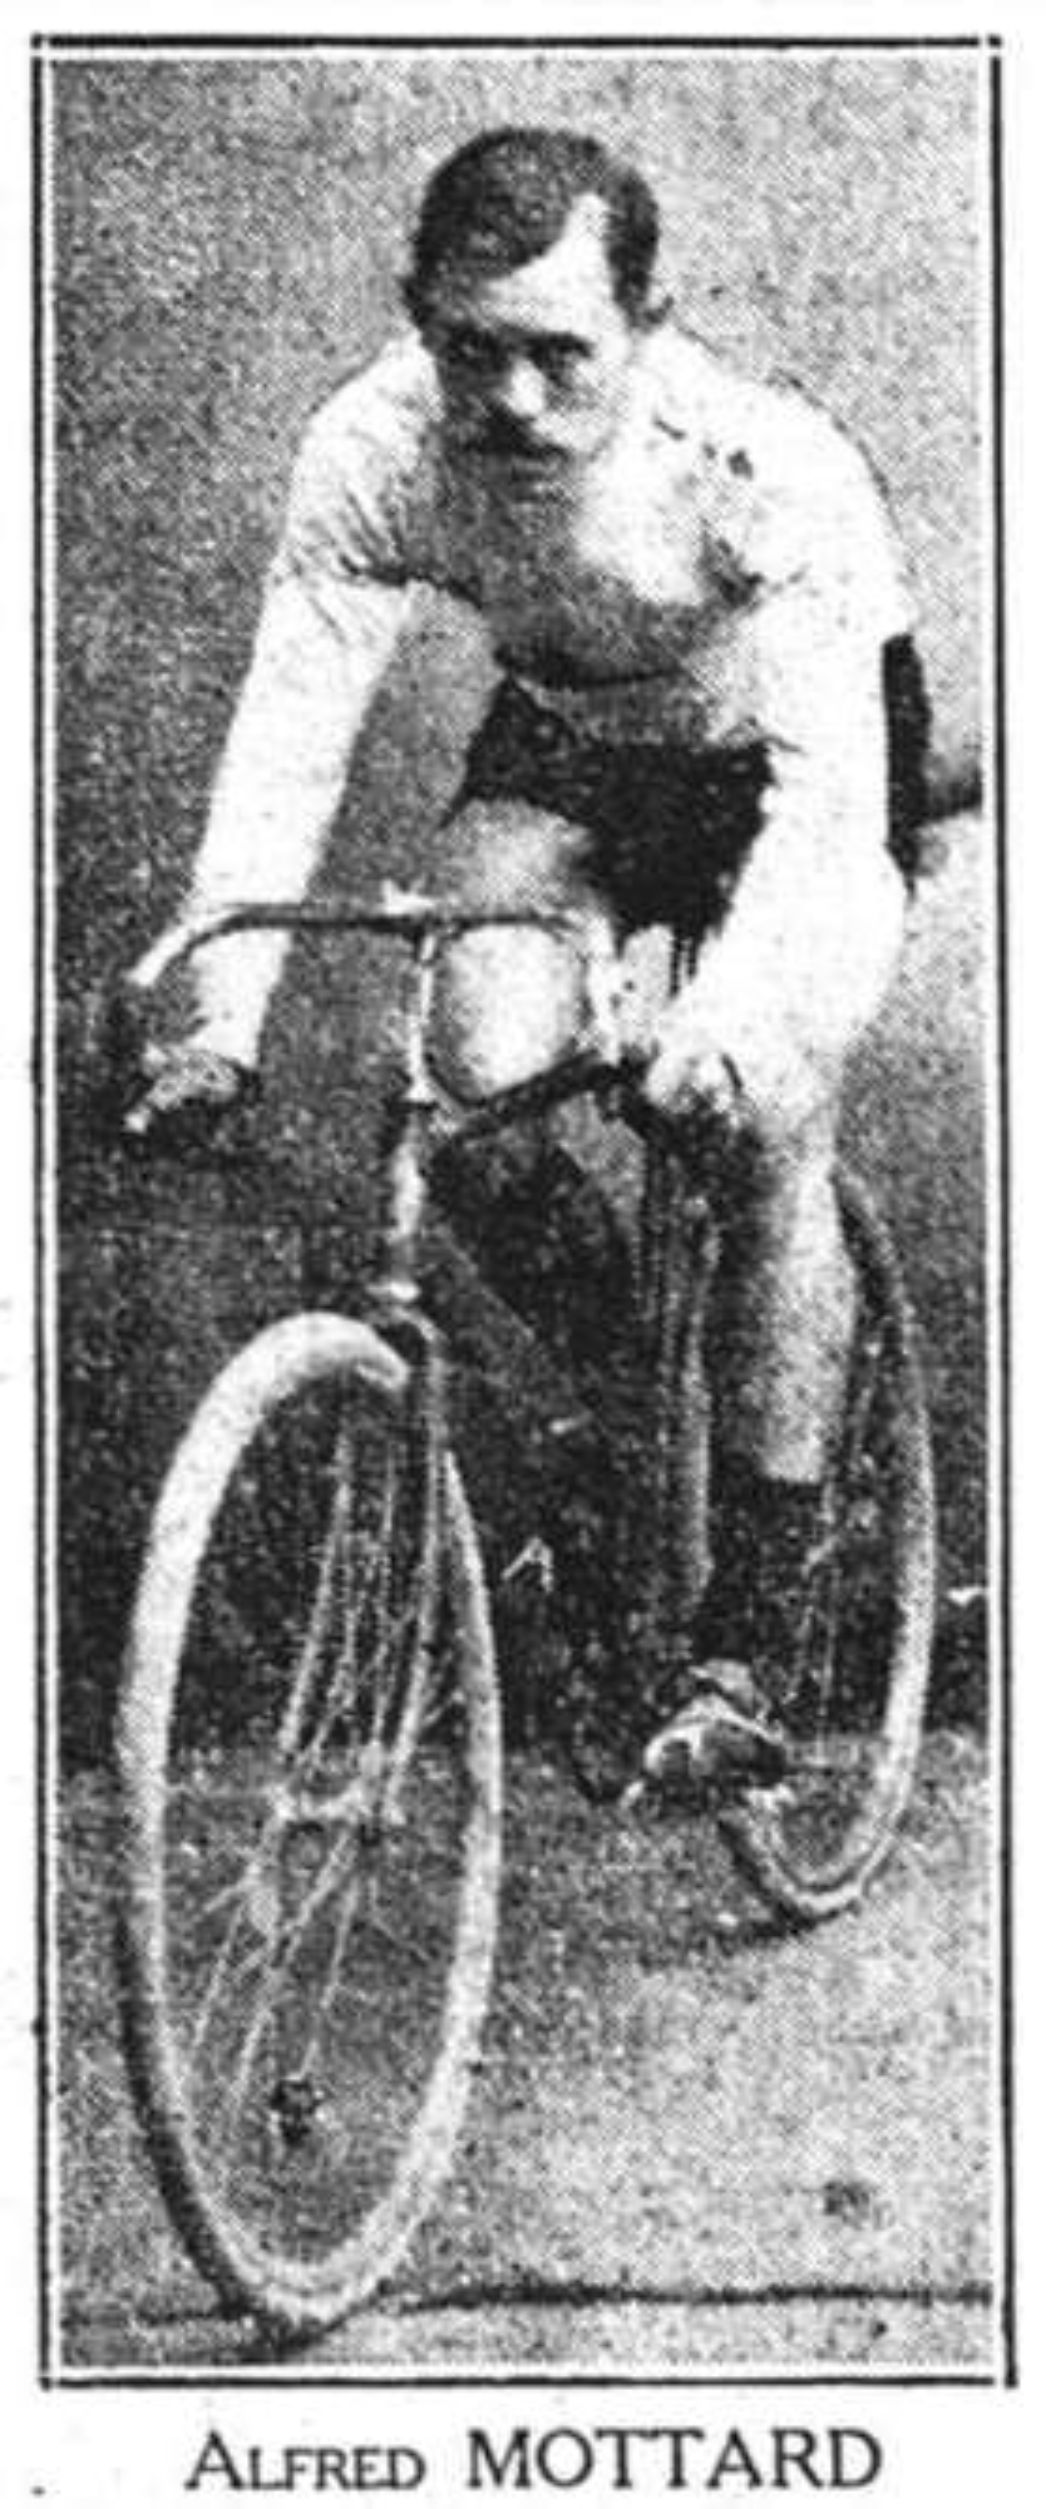 Zu sehen ist Alfred Mottard, in zeitgemäßer Radsportkleidung auf seinem Fahrad. Er hat einen charakteristischen großen Schnurrbart.